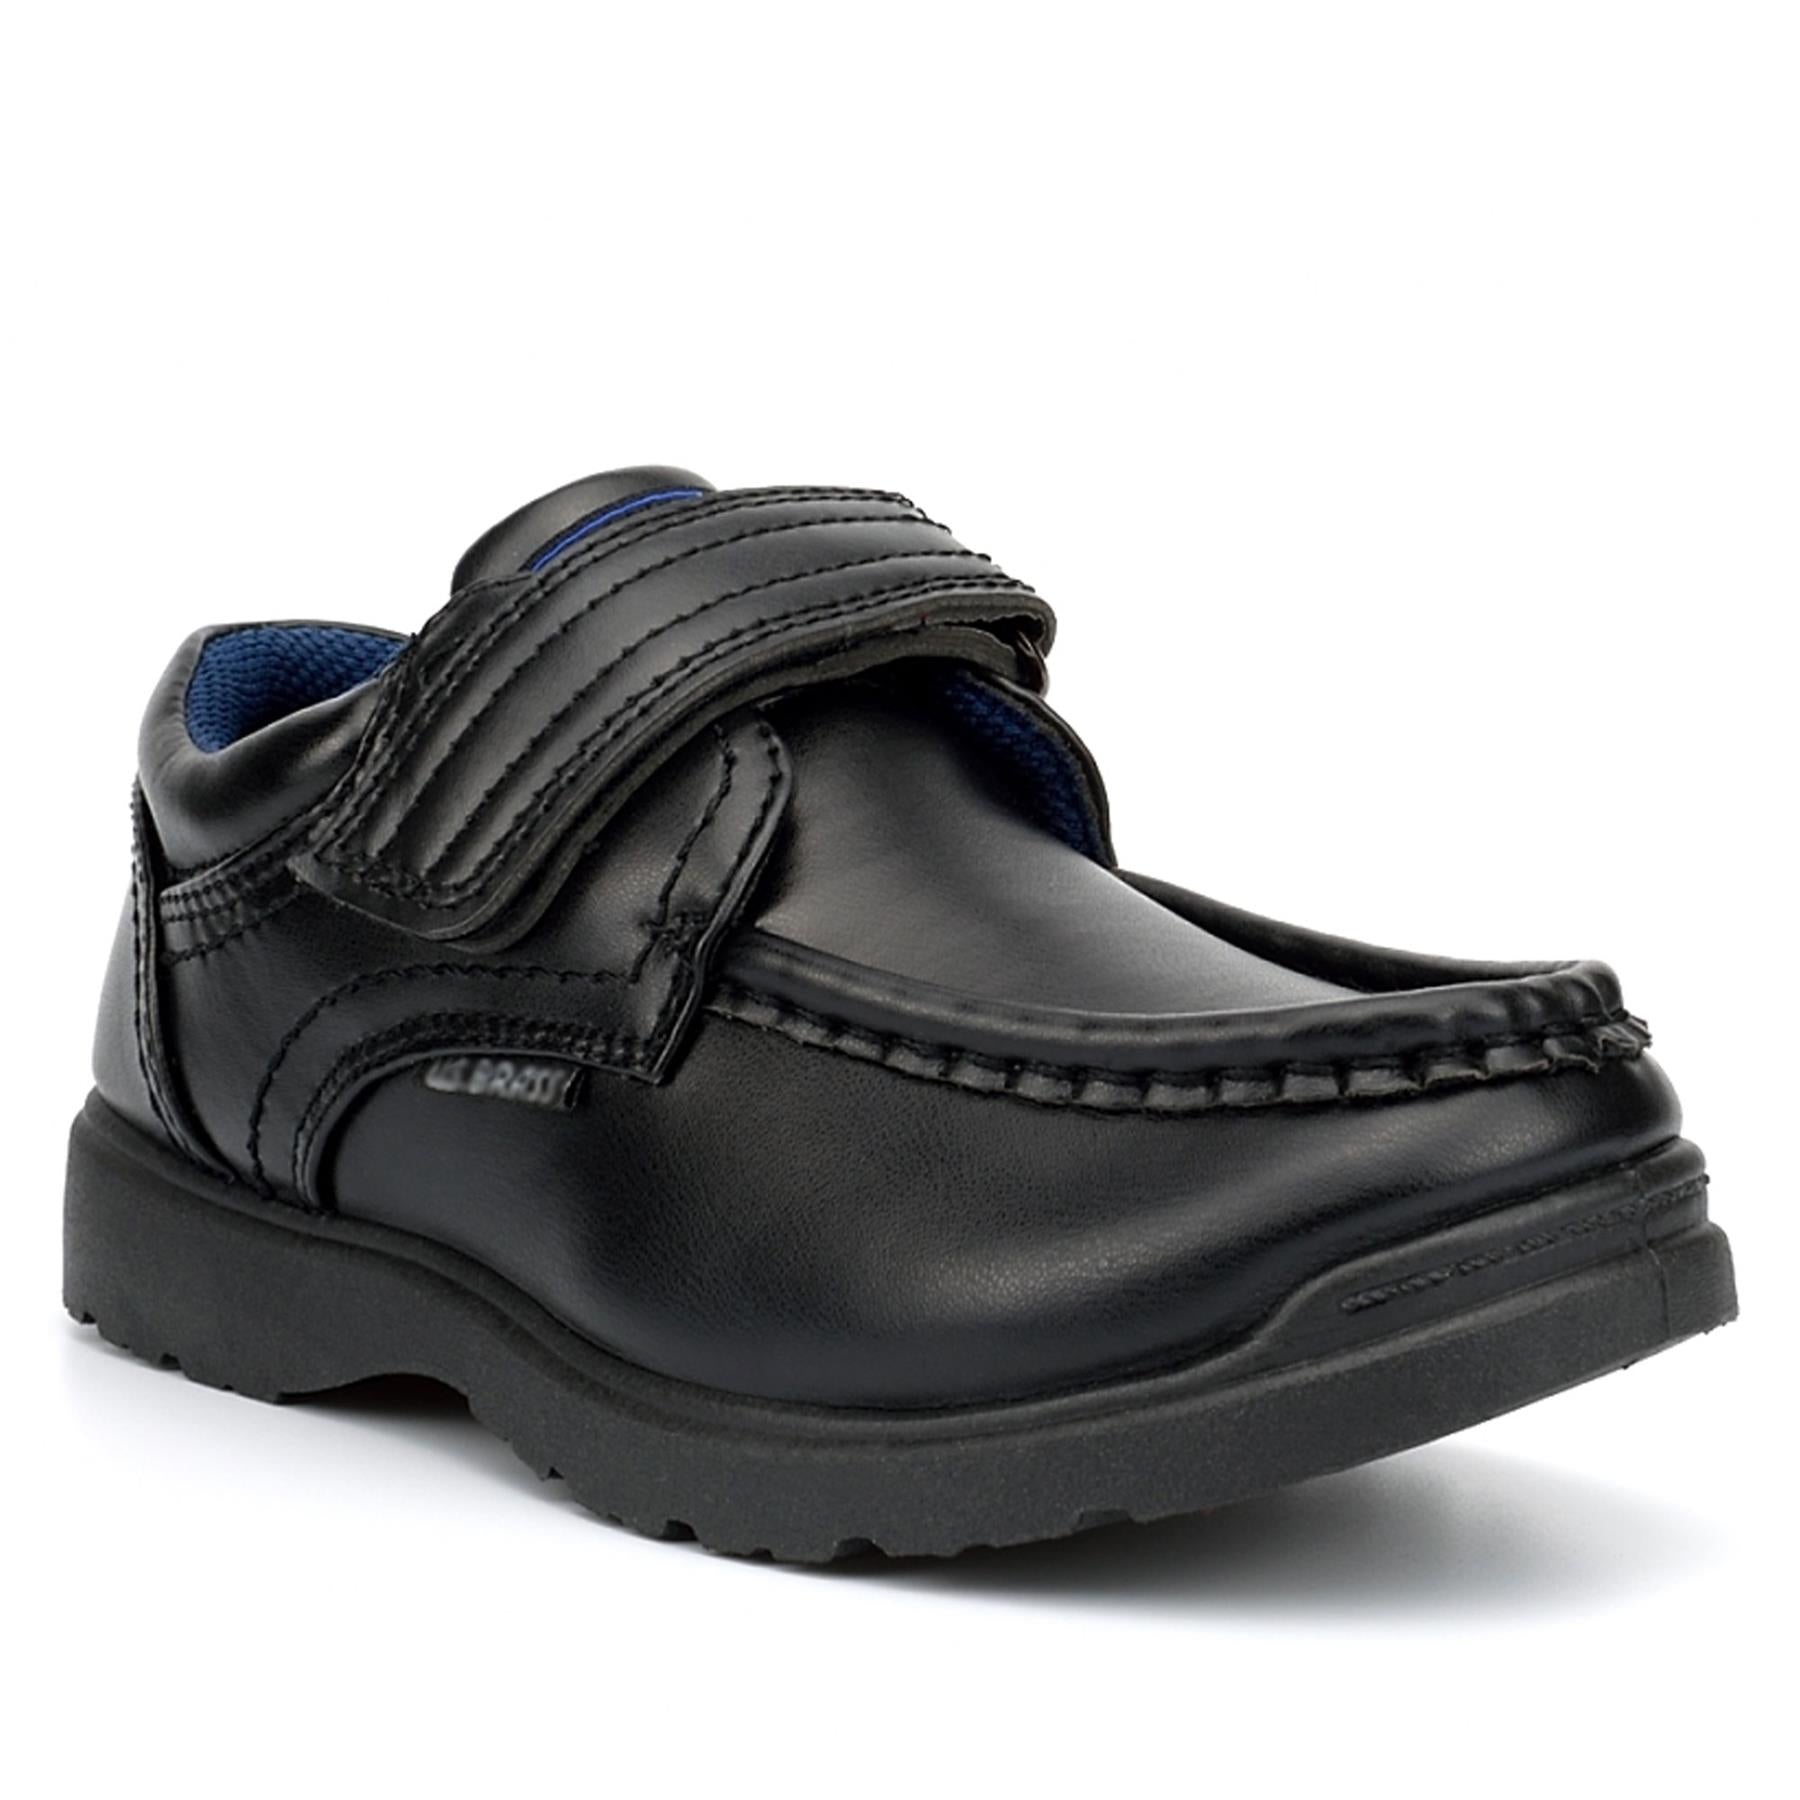 Boys School Shoes Wide Strap Easy Fasten Trainer PU Leather Memory Foam Sneakers